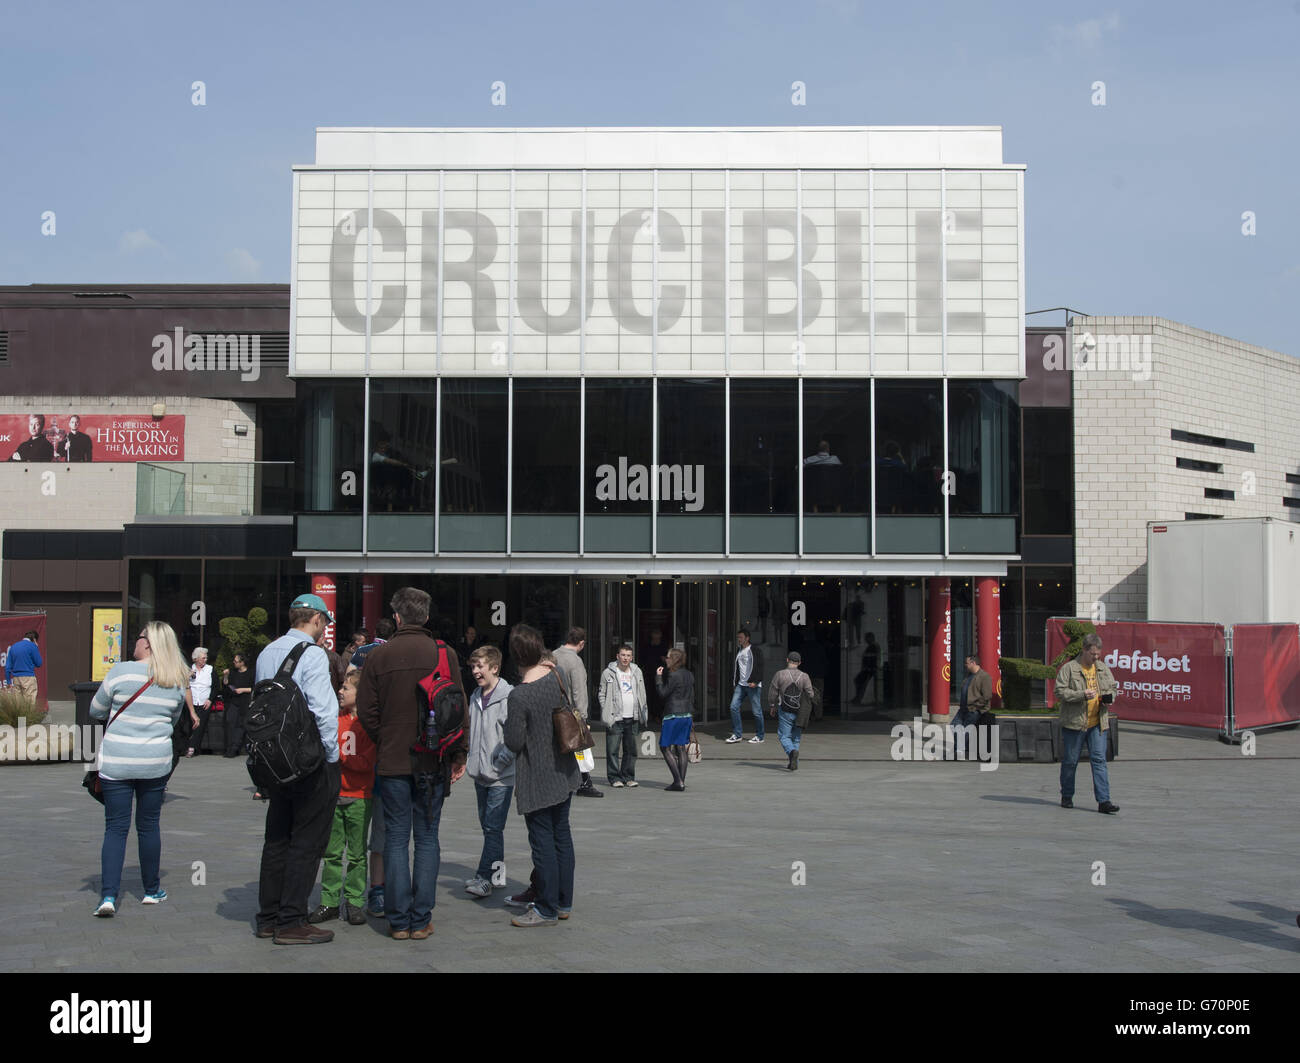 Una veduta generale del Crucible Theatre durante i Campionati Mondiali di Snooker di Dafabet al Crucible, Sheffield. Foto Stock